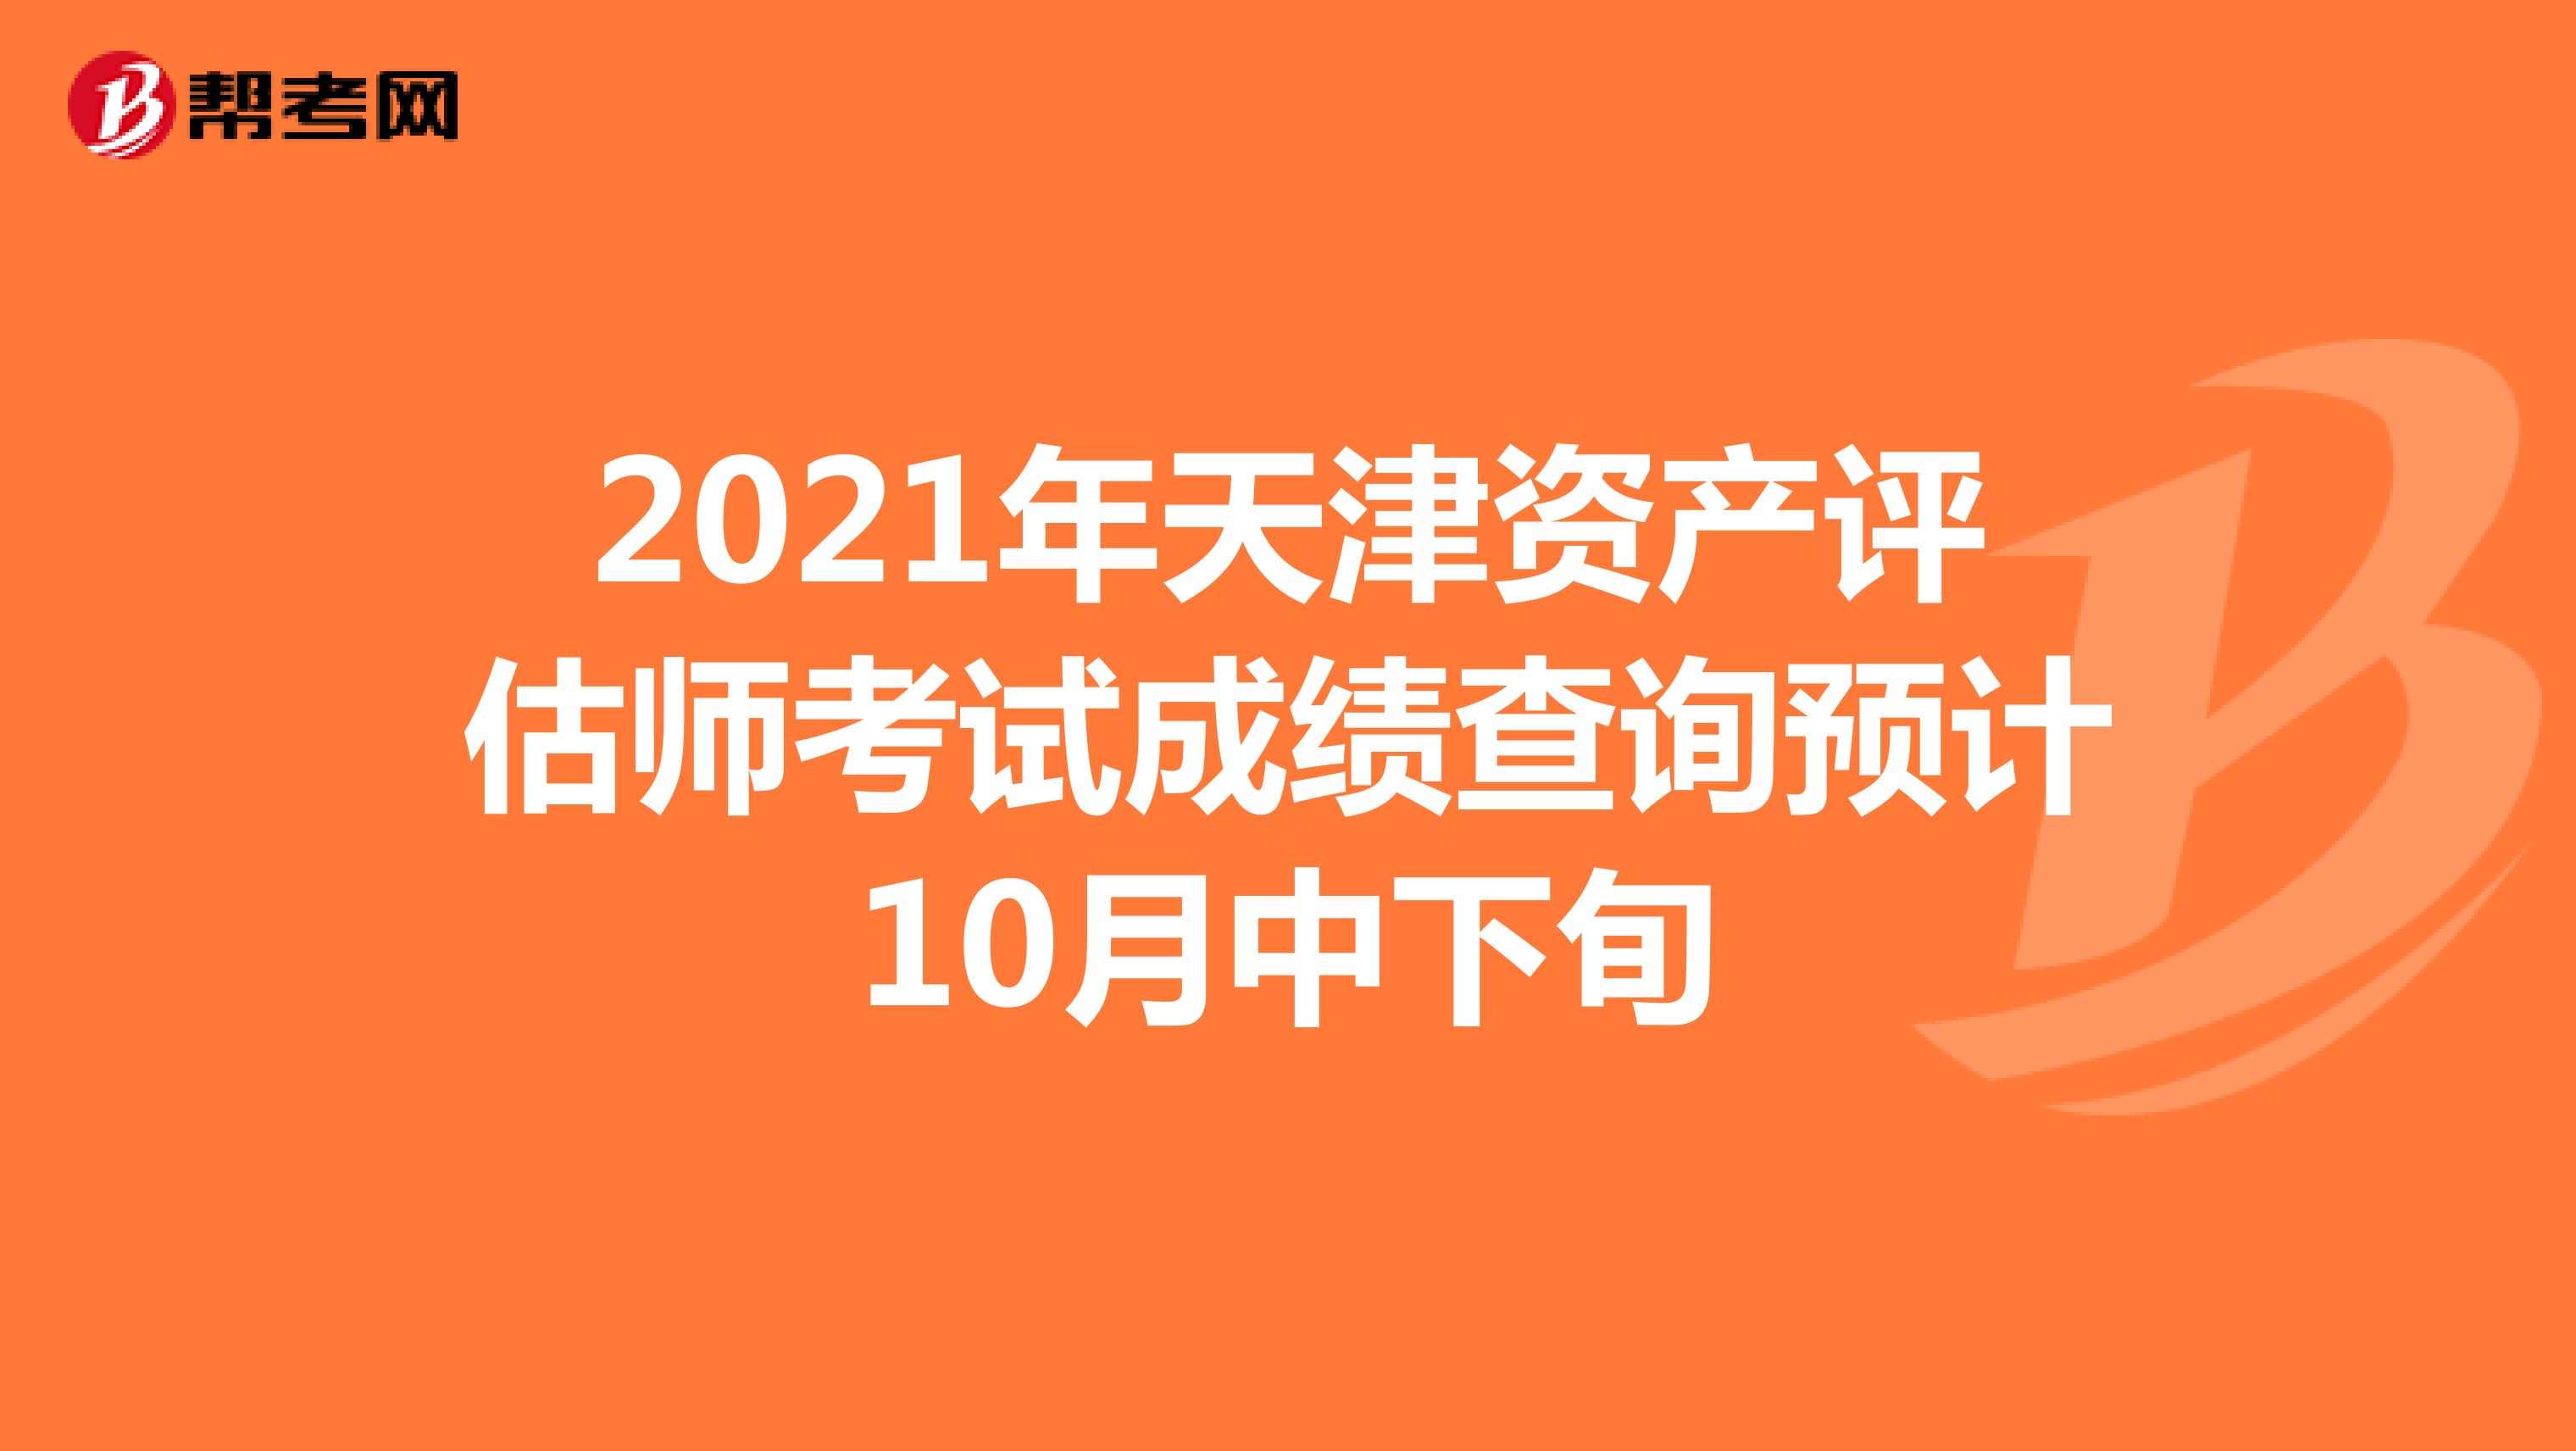 2021年天津资产评估师考试成绩查询预计10月中下旬